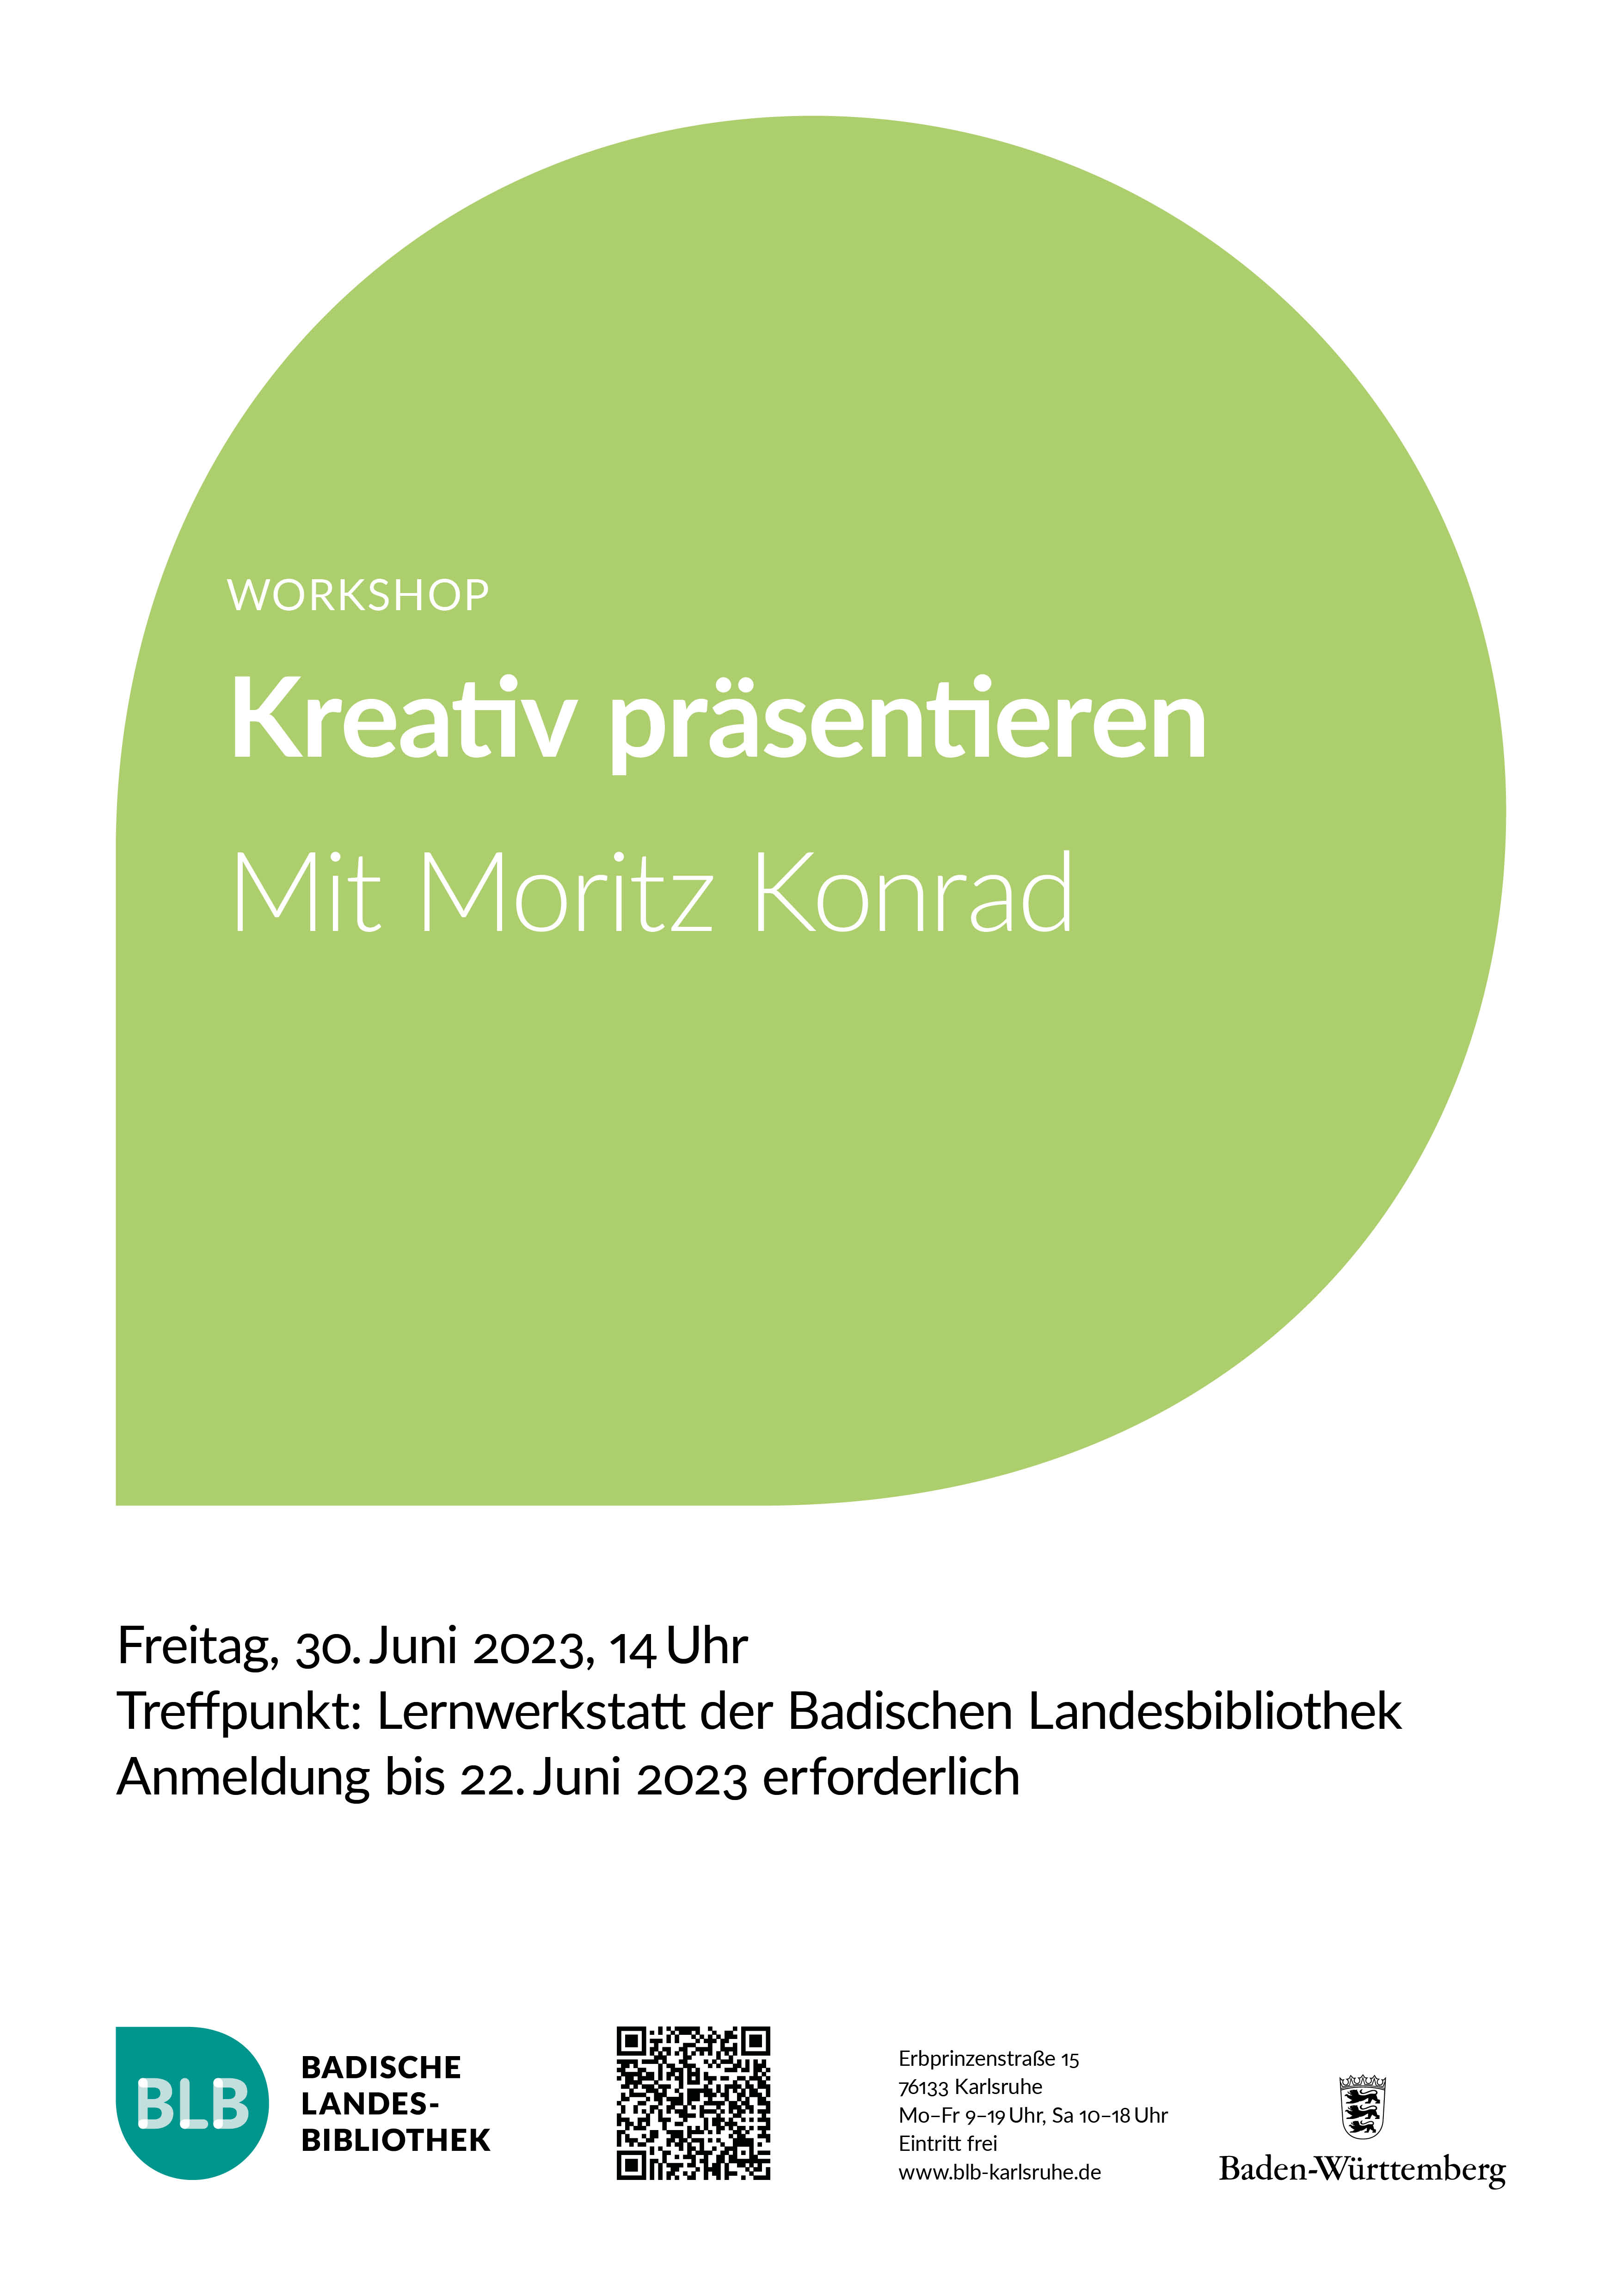 Zu sehen ist ein grünes Monogon mit der Aufschrift "Kreativ präsentieren", ein Workshop mit Moritz Konrad am Freitag, dem 30. Juni 2023 um 14 Uhr in der Lernwerkstatt der BLB. Anmeldung erforderlich.